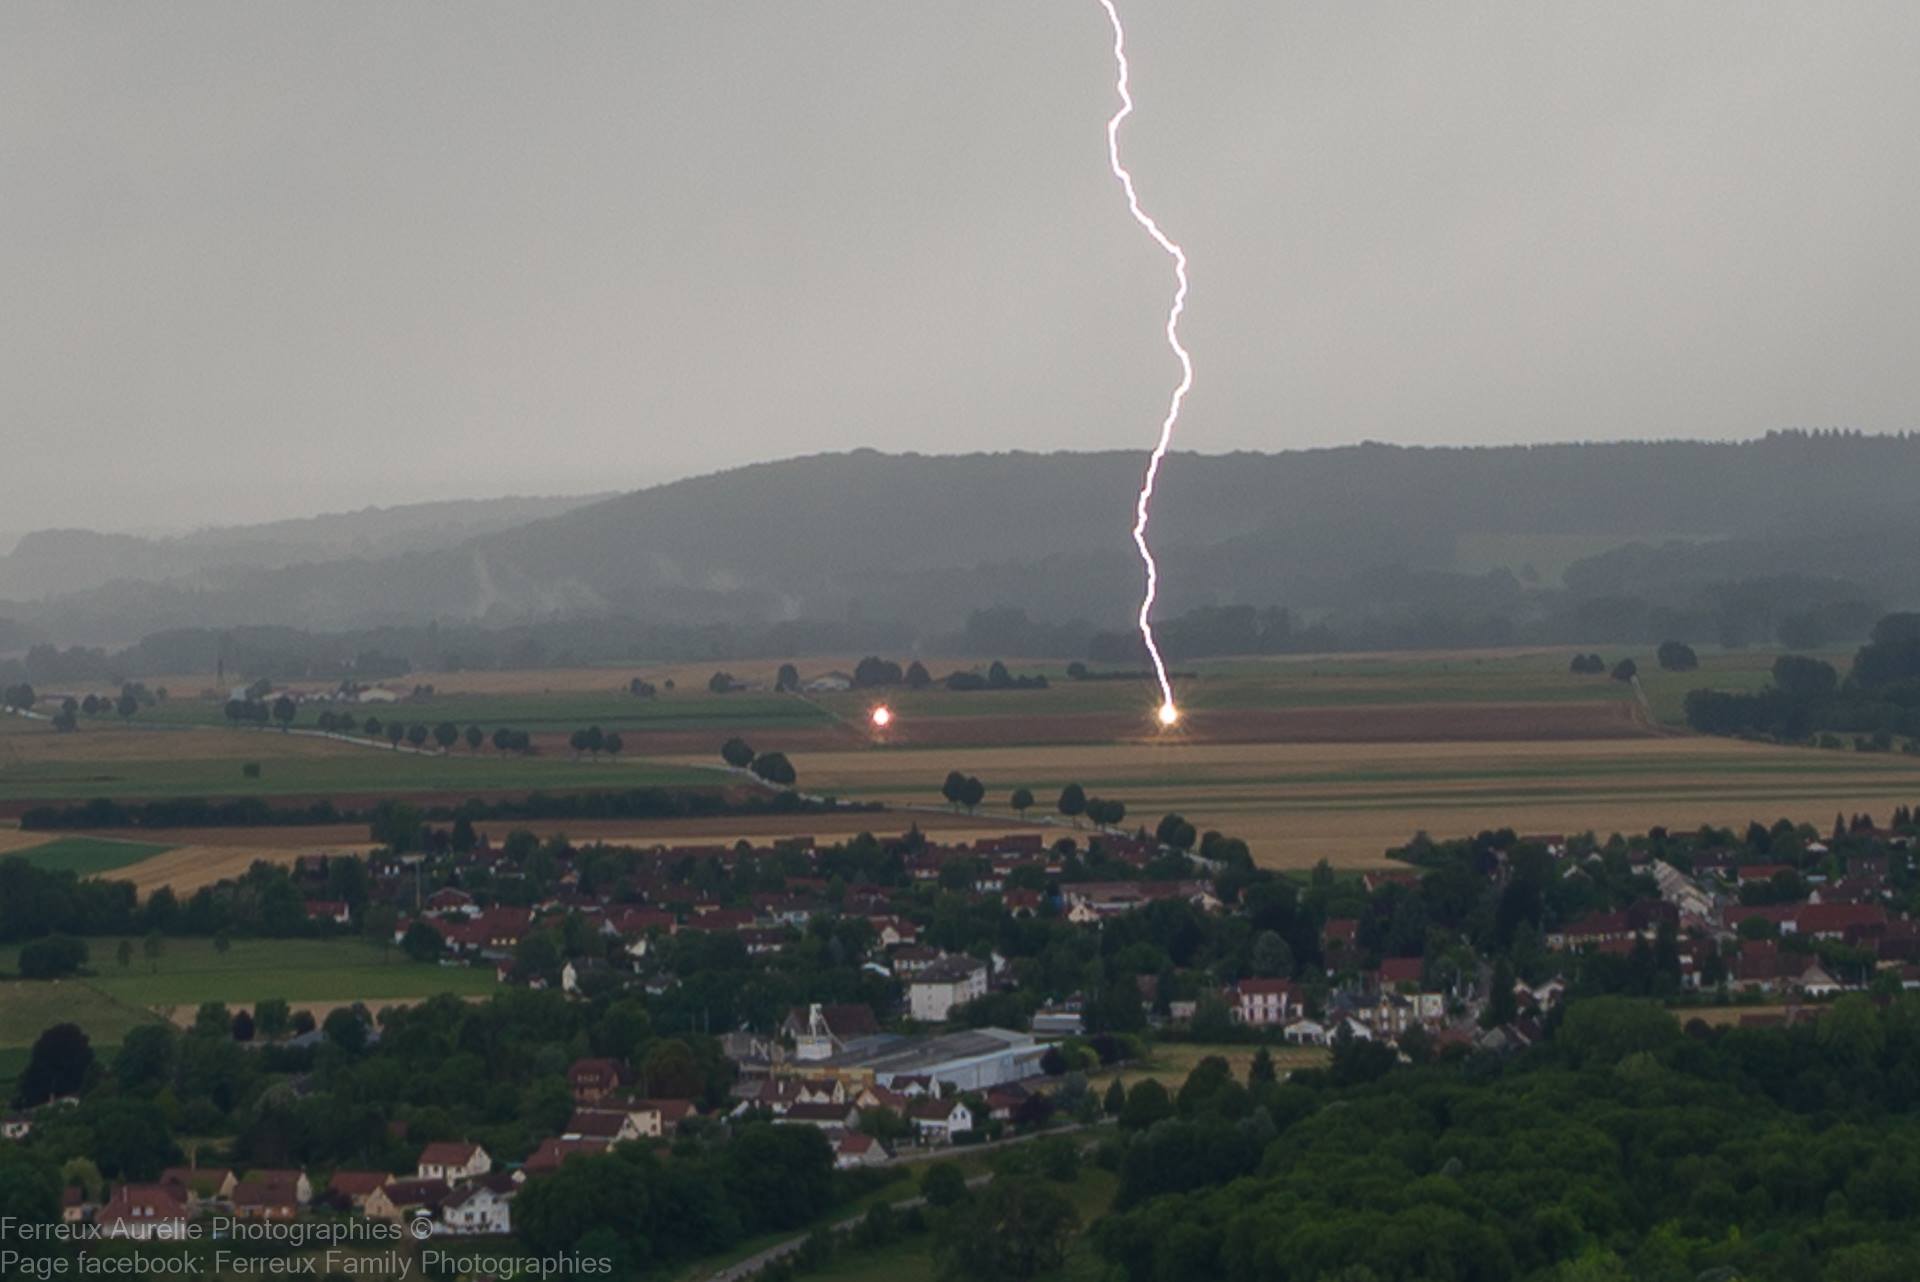 Impact de foudre proche de Château-Chalon dans le Jura sur un pylône électrique provoquant un amorçage à deux points différents. - 09/07/2017 17:00 - Aurélie FERREUX